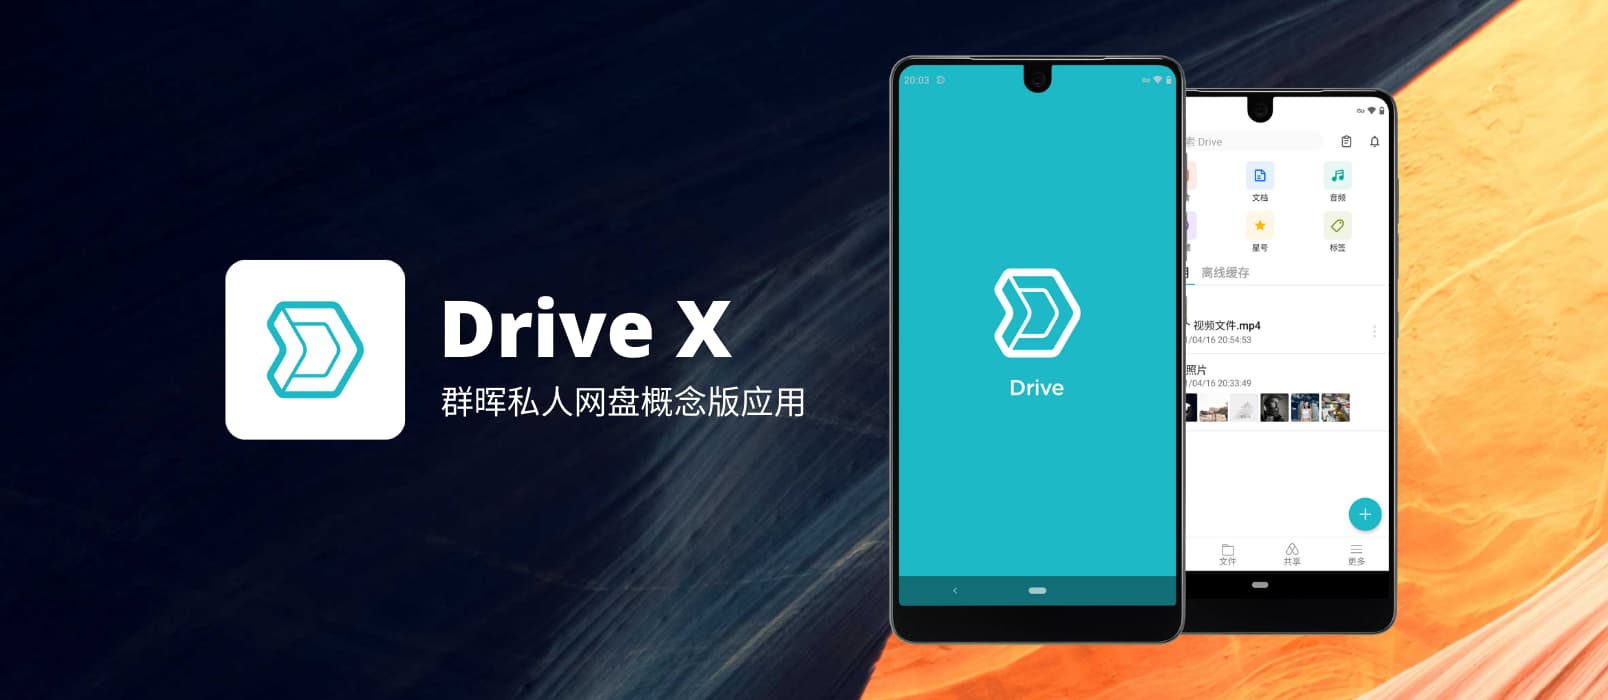 群晖发布概念版网盘应用 Drive X，做只属于你的全能网盘，自动备份照片、视频，自动备份微信